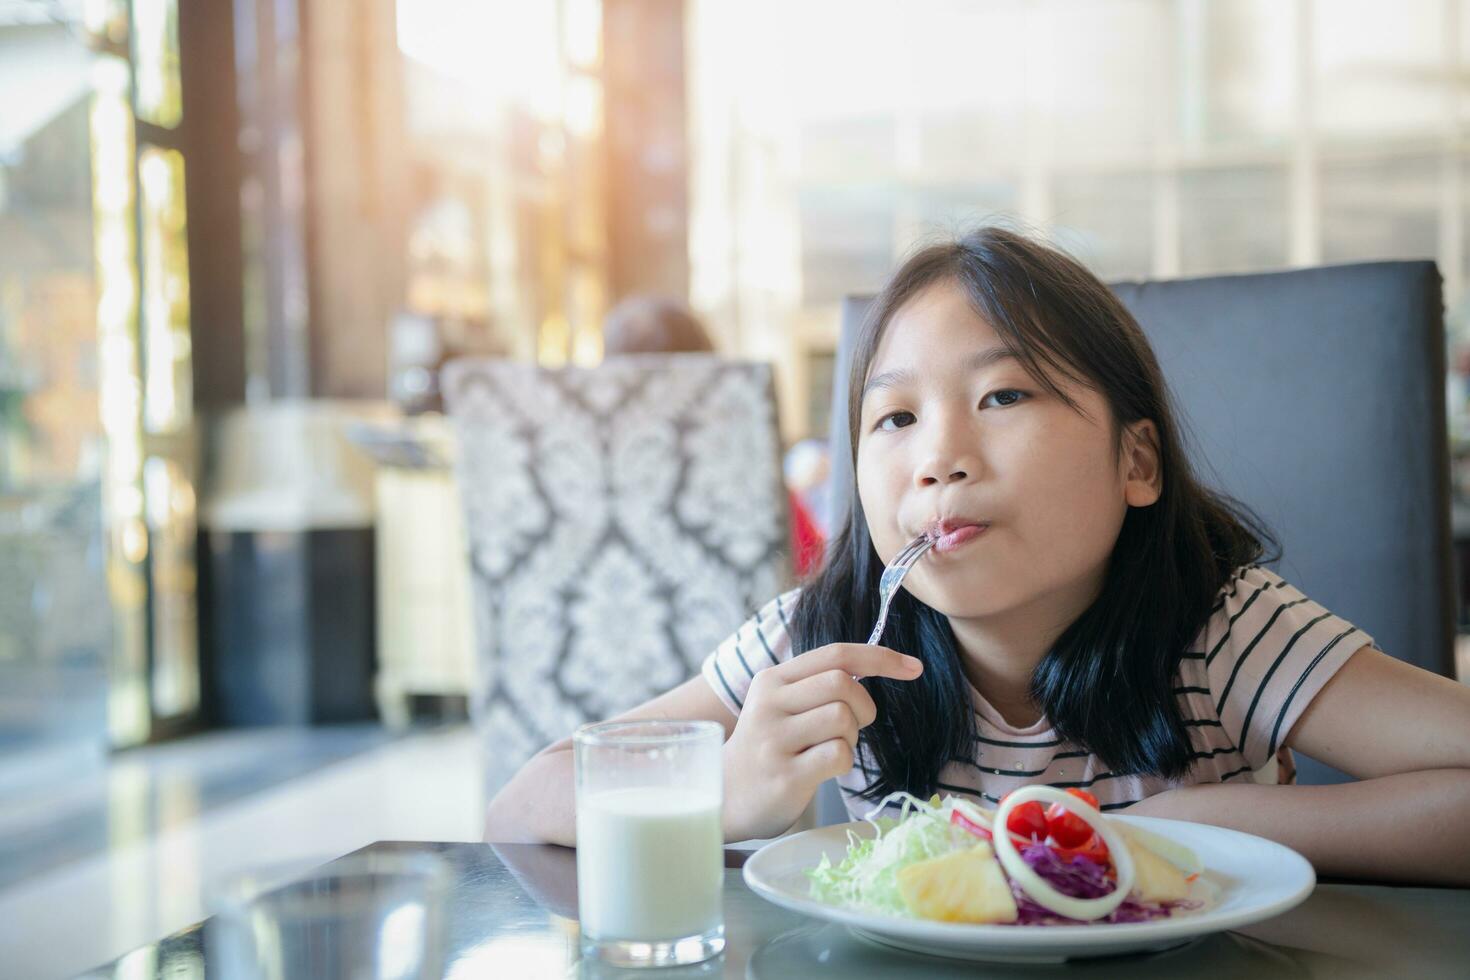 asiático linda pequeño niña comiendo Fresco tomate y ensalada en Mañana. foto